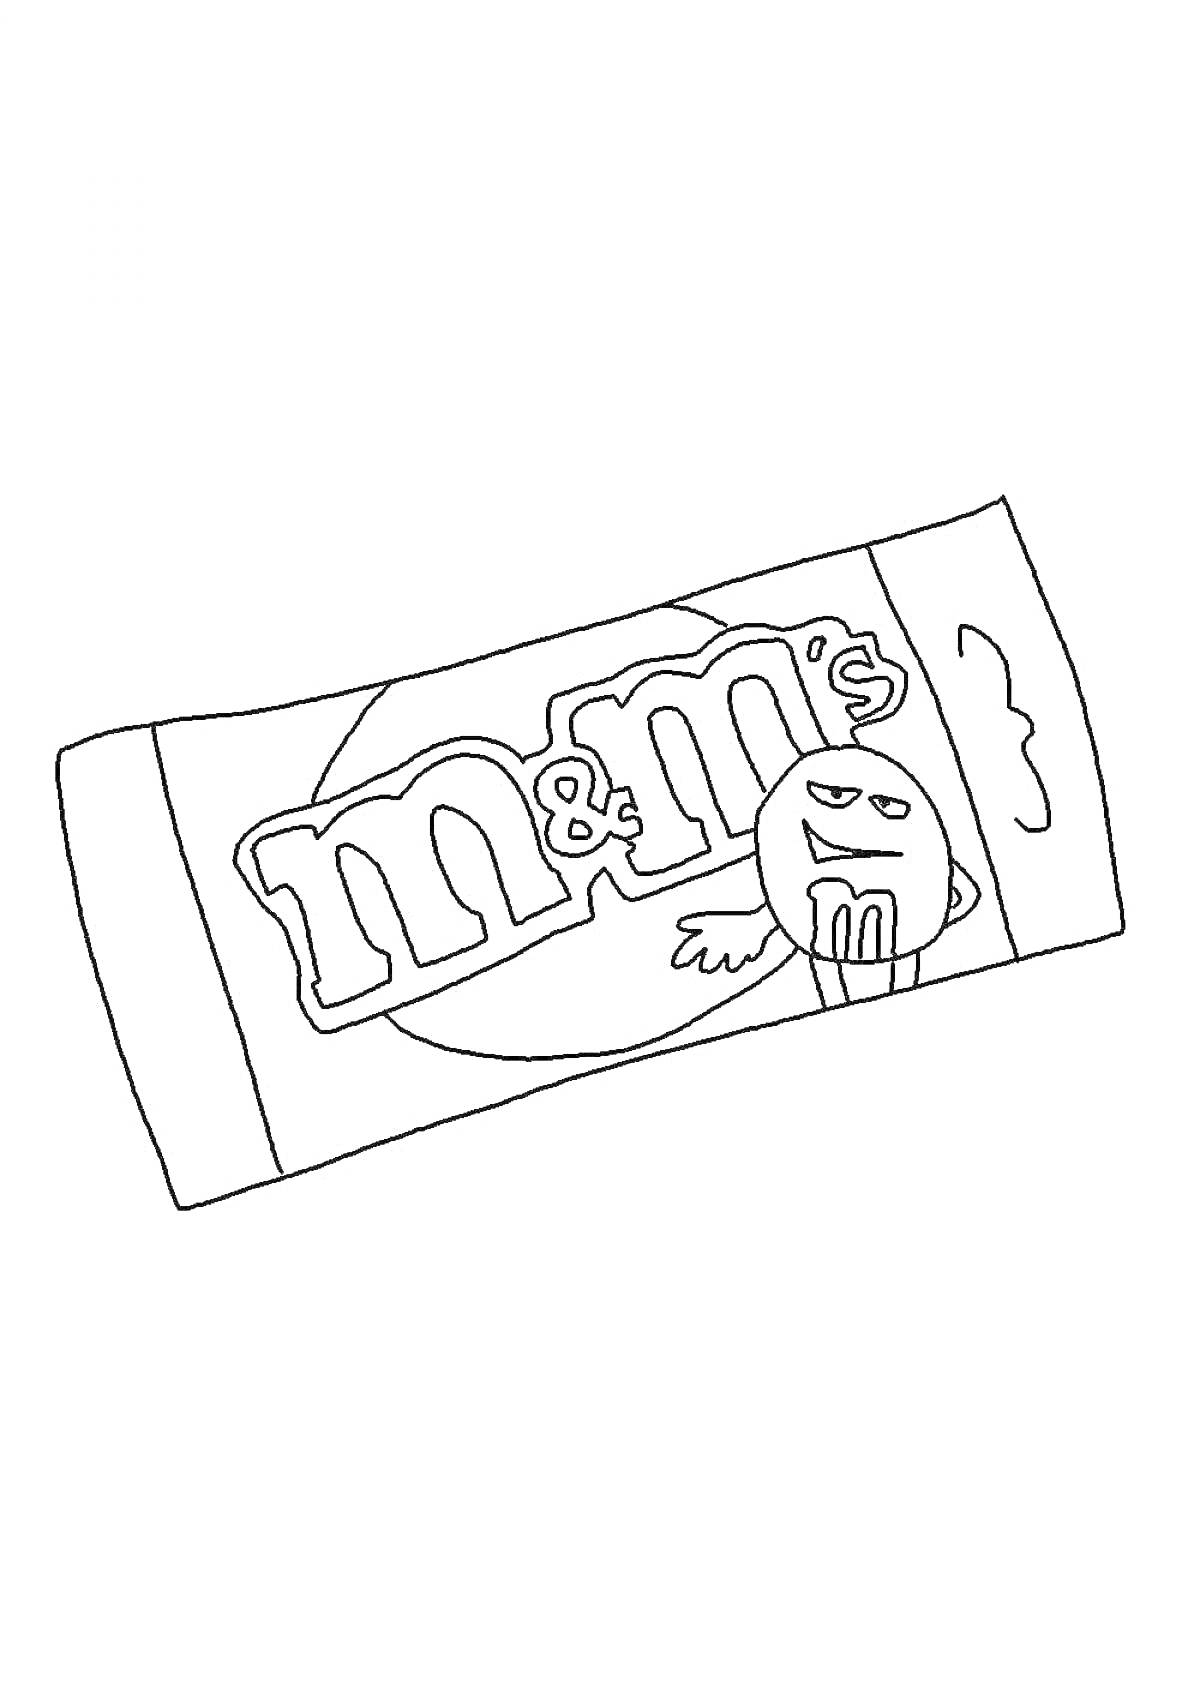 Пакетик M&M's с изображением смешного персонажа